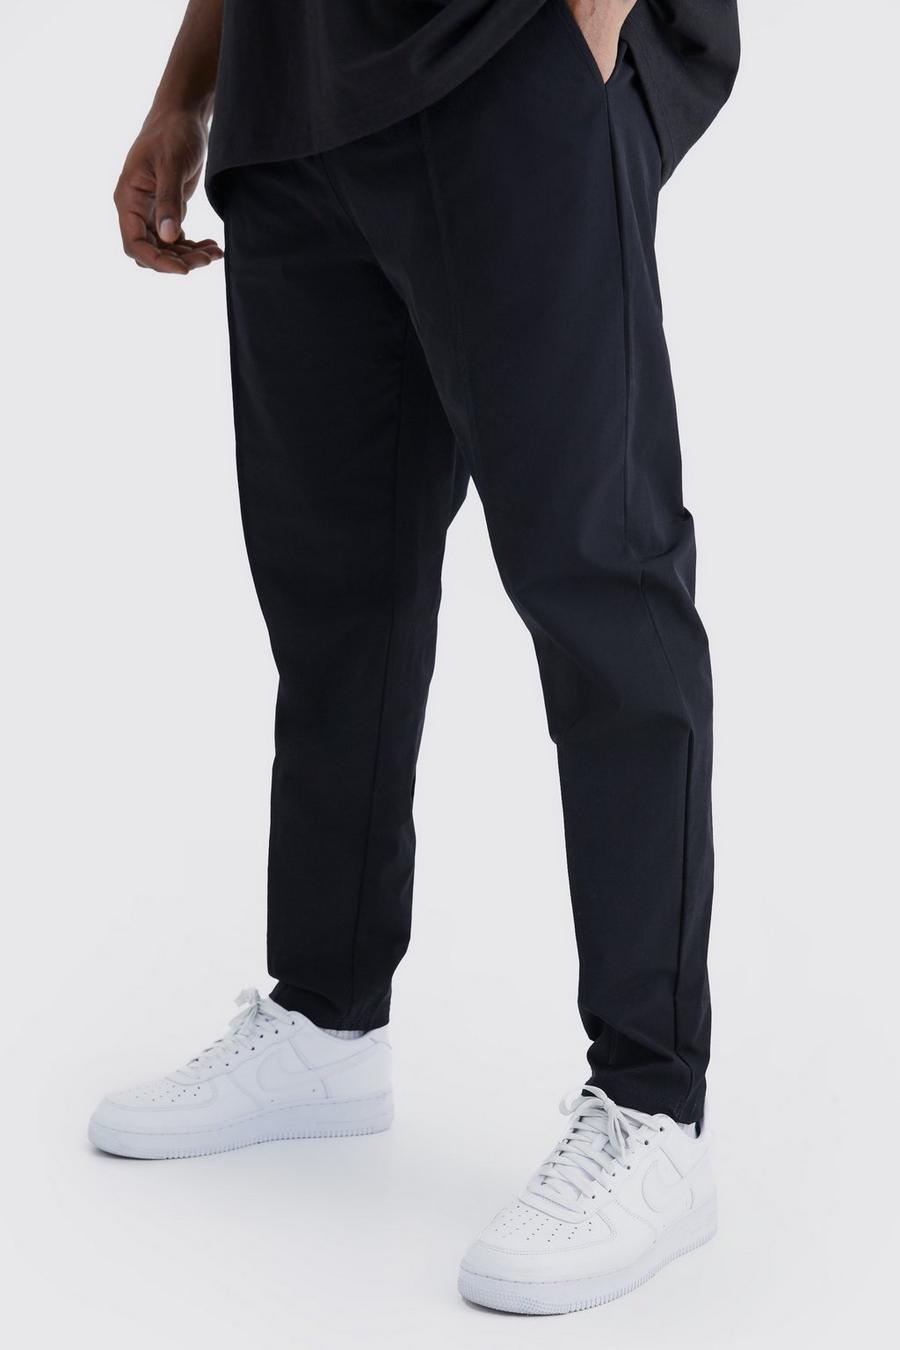 Pantaloni Plus Size in Stretch leggero elasticizzato con nervature, Black